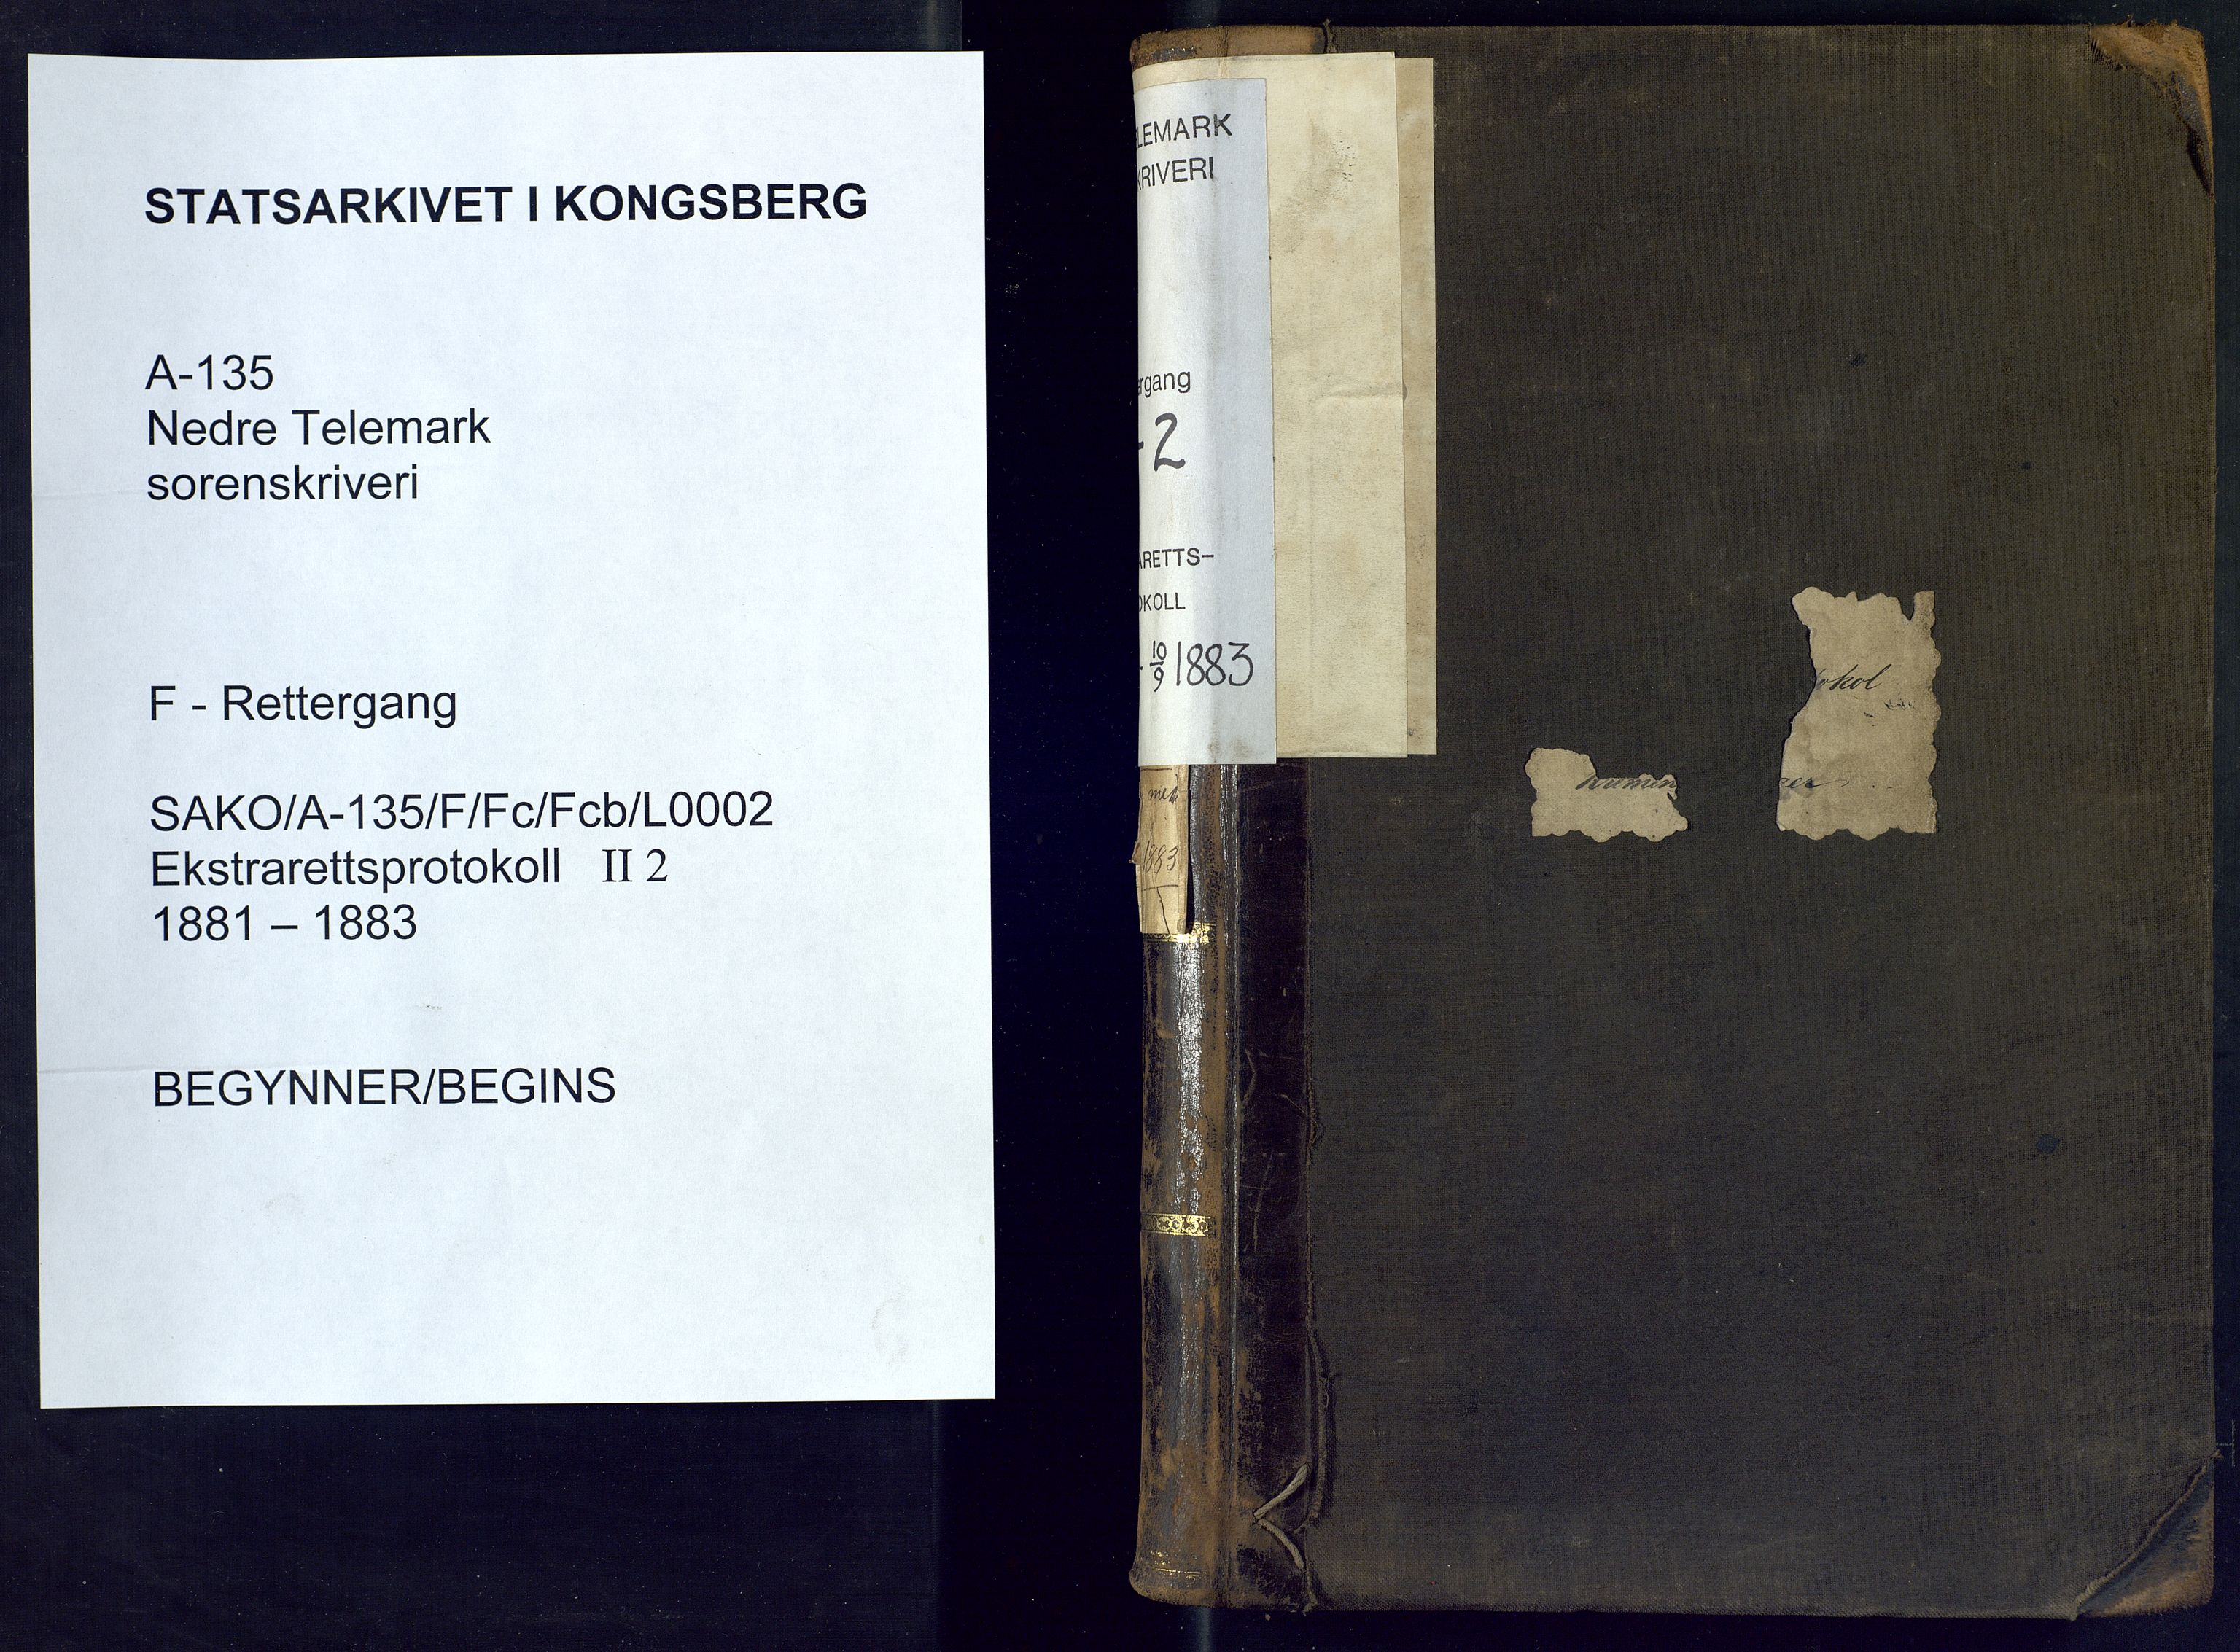 Nedre Telemark sorenskriveri, SAKO/A-135/F/Fc/Fcb/L0002: Ekstrarettsprotokoll, 1881-1883